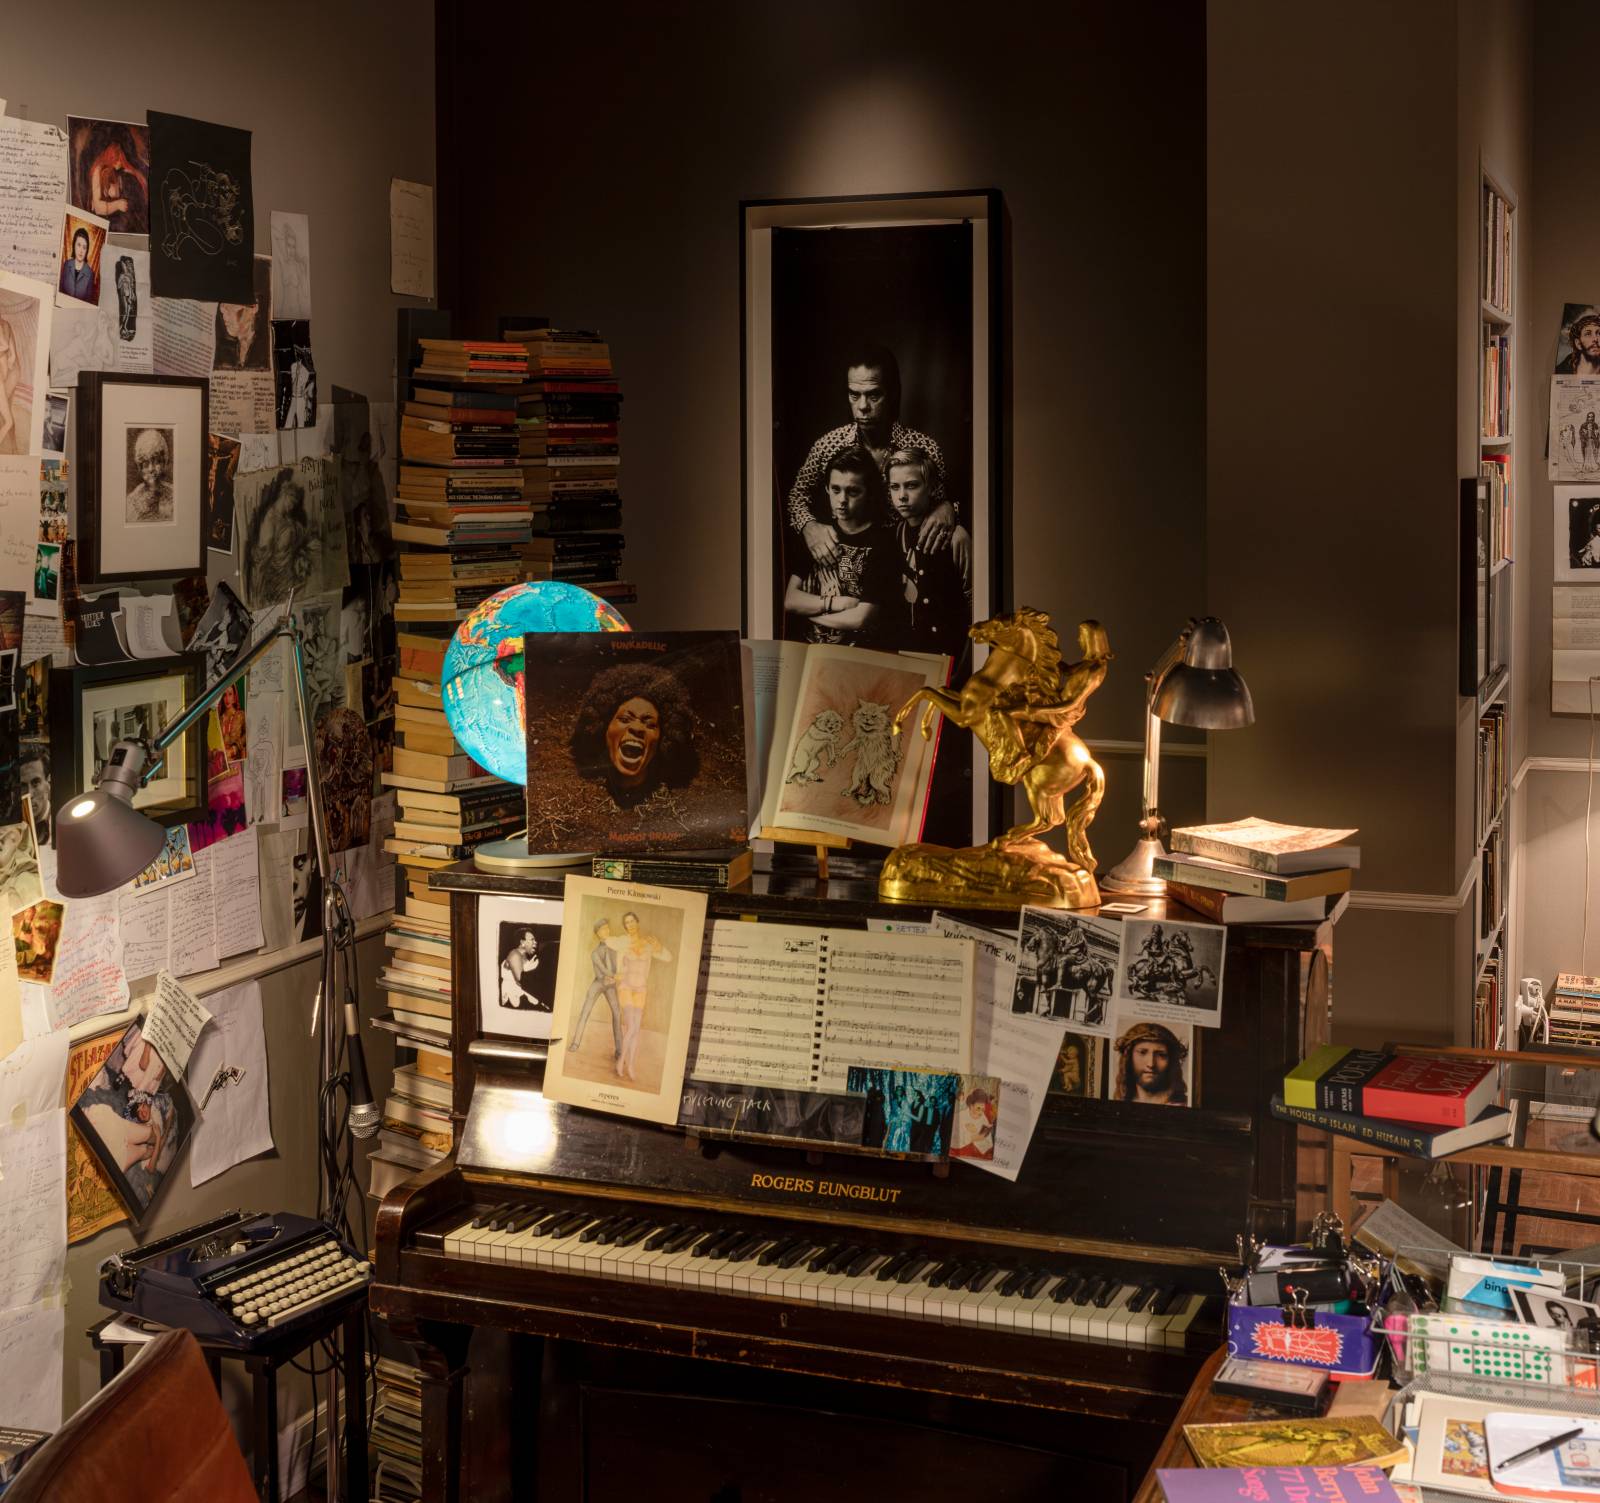 Rekonstrukcja pracowni Nick Cavea powstała we współpracy z artystami Iain Forsyth & Jane Pollard. Obejmuje przedmioty z prywatnego wnętrza łącznie z całą biblioteką muzyka. (Fot.Anders Sune Berg / Royal Danish Library)